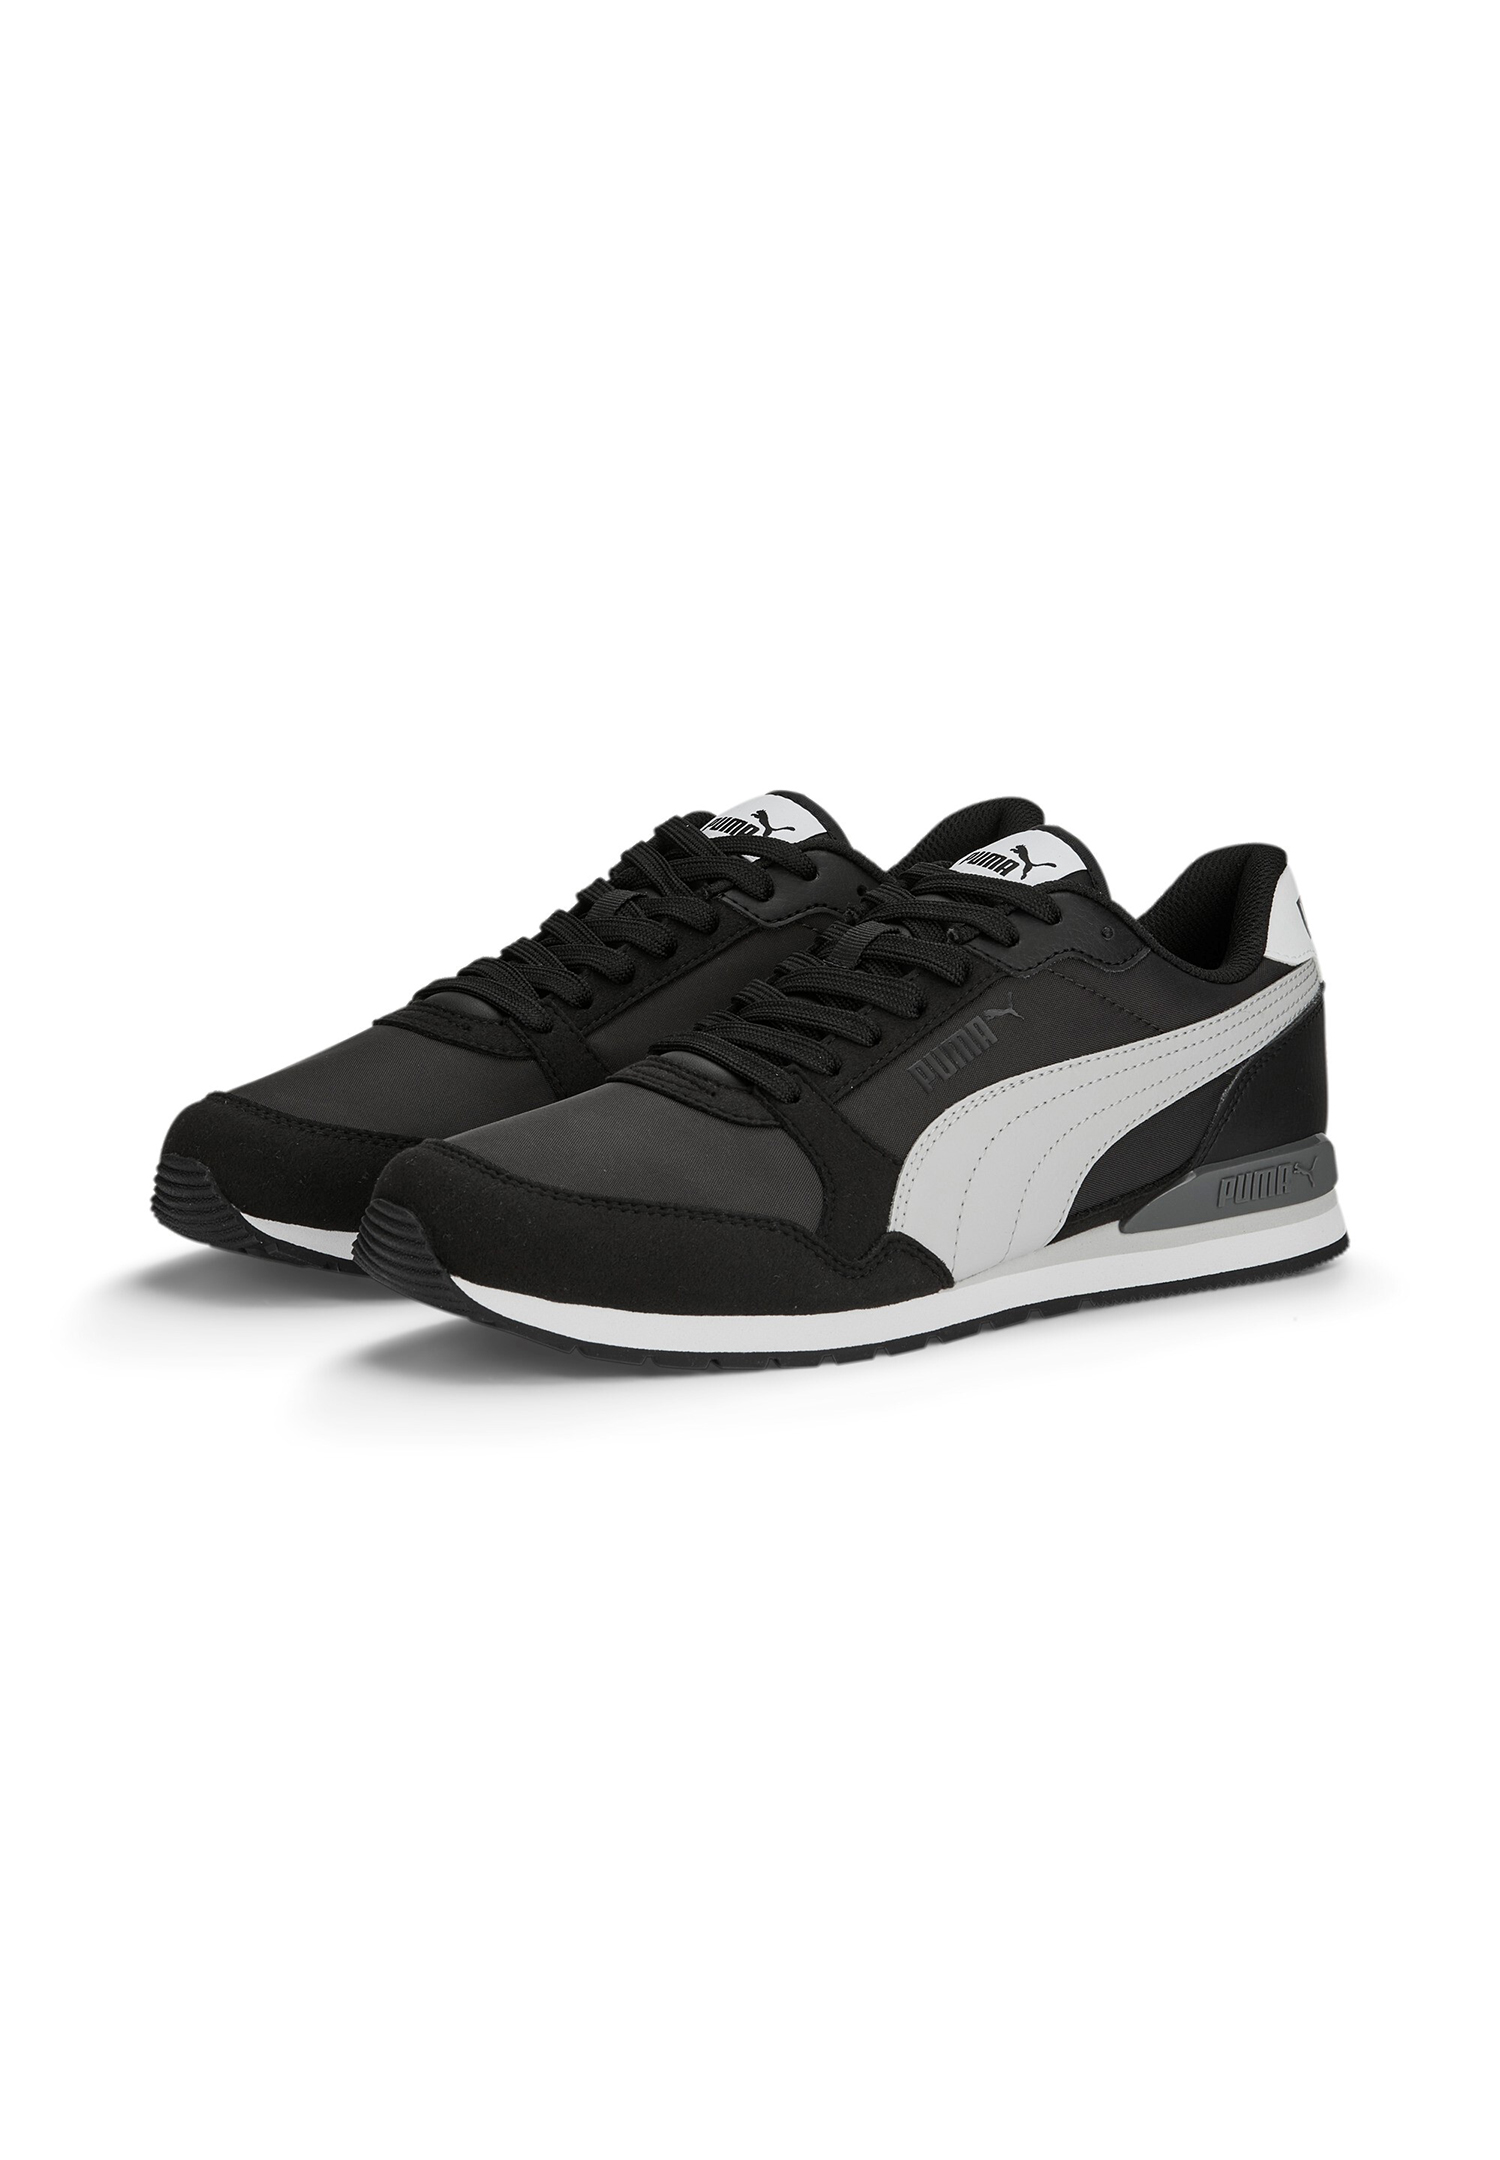 Puma ST Runner V3 NL Unisex Sneaker Turnschuhe 384857 schwarz